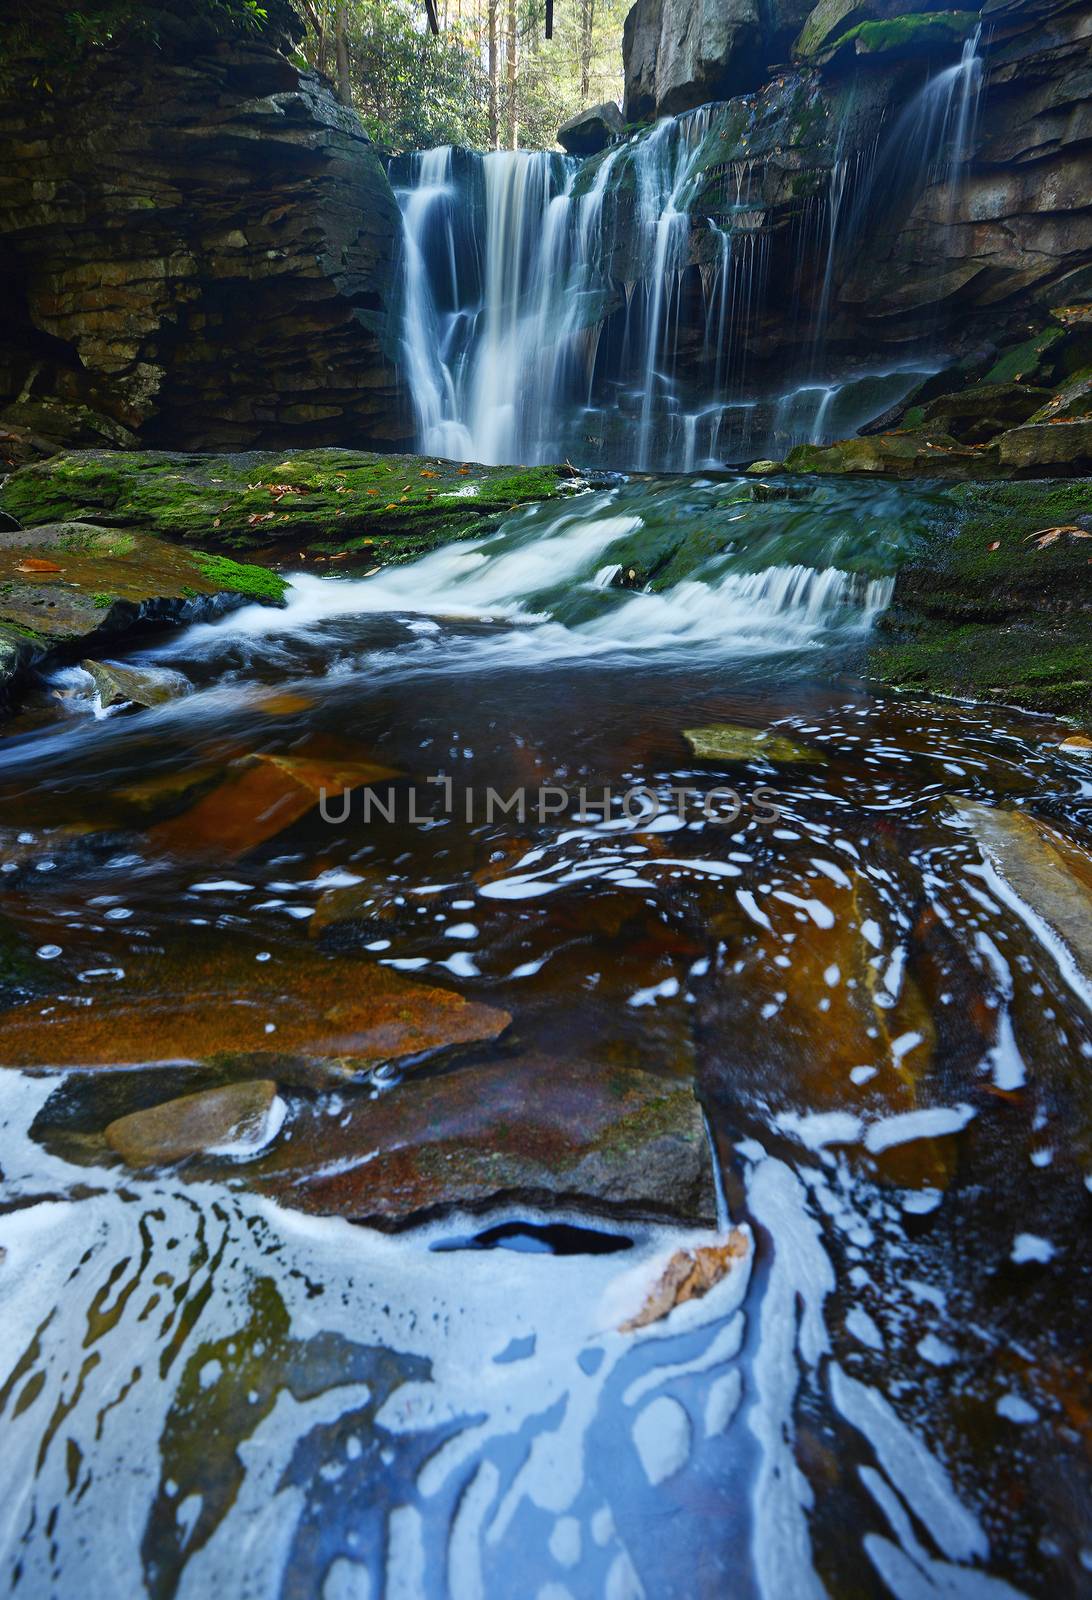 Waterfall in West Virginia by porbital